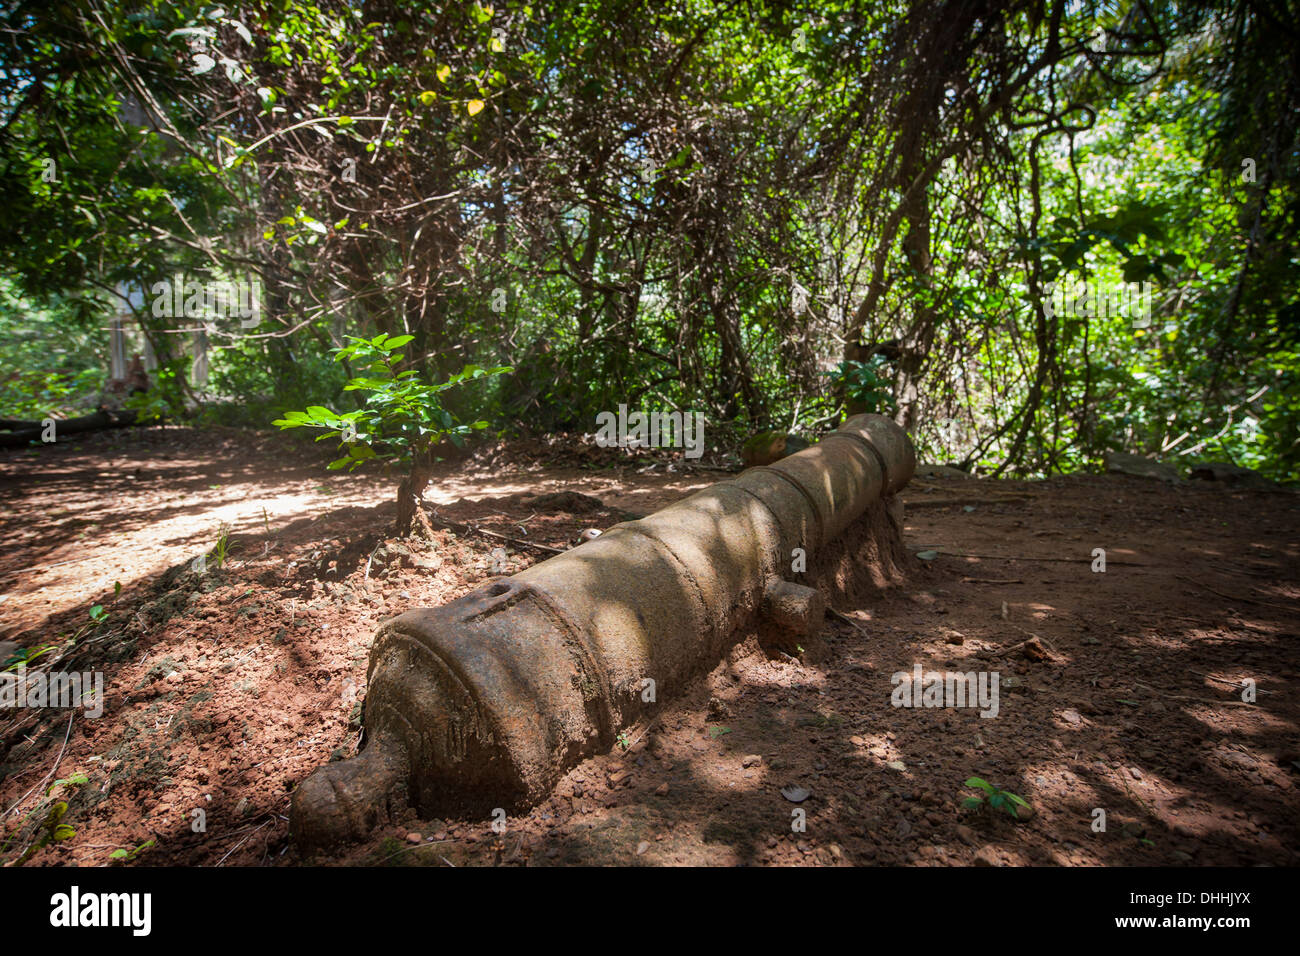 Il vecchio cannone come una reliquia dell'epoca coloniale nella giungla, Banana isole, Area occidentale, Sierra Leone Foto Stock